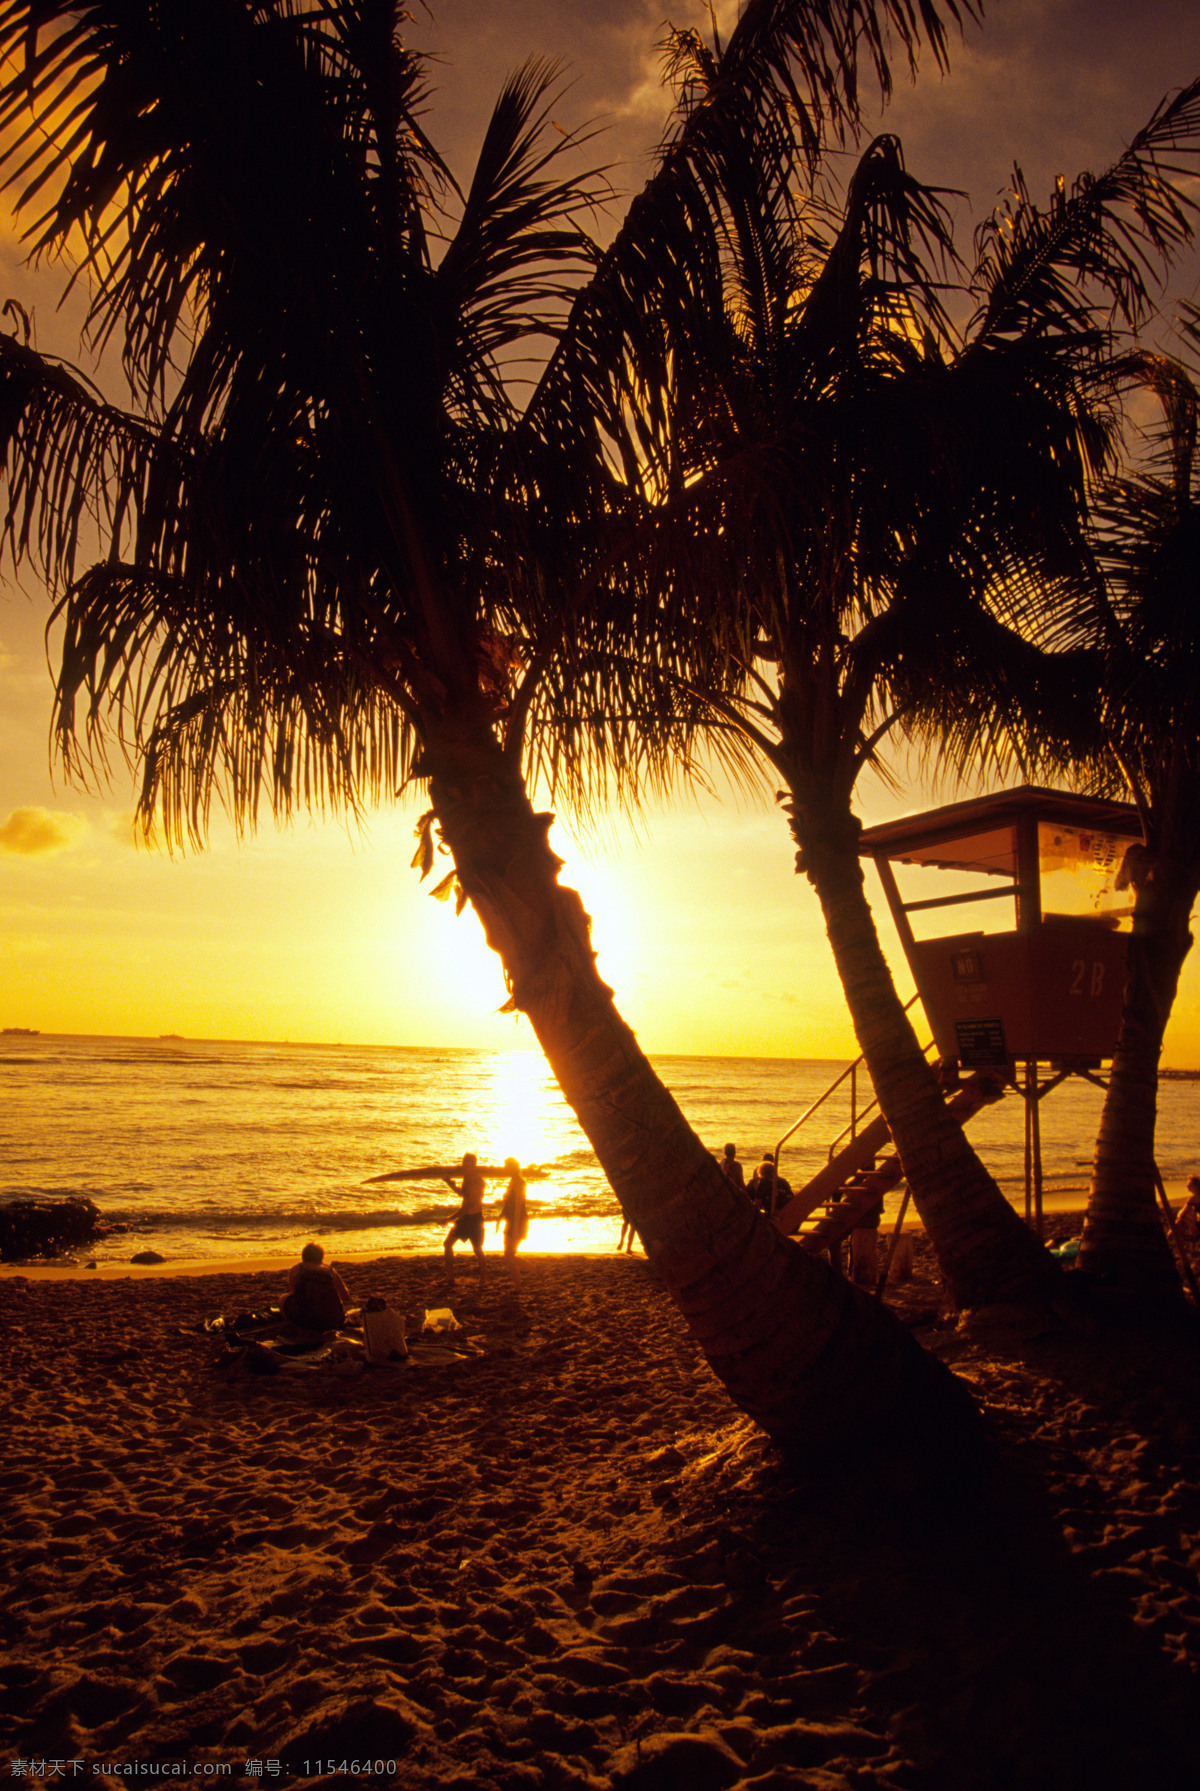 黄昏 时 海边 风景 美丽海滩 海边风景 太平洋 海岸风光 落日 夕阳 沙滩 海滩 大海 海洋 海平面 椰子 椰树 度假 旅游景点 海景 景色 美景 摄影图 高清图片 海洋海边 自然景观 黑色